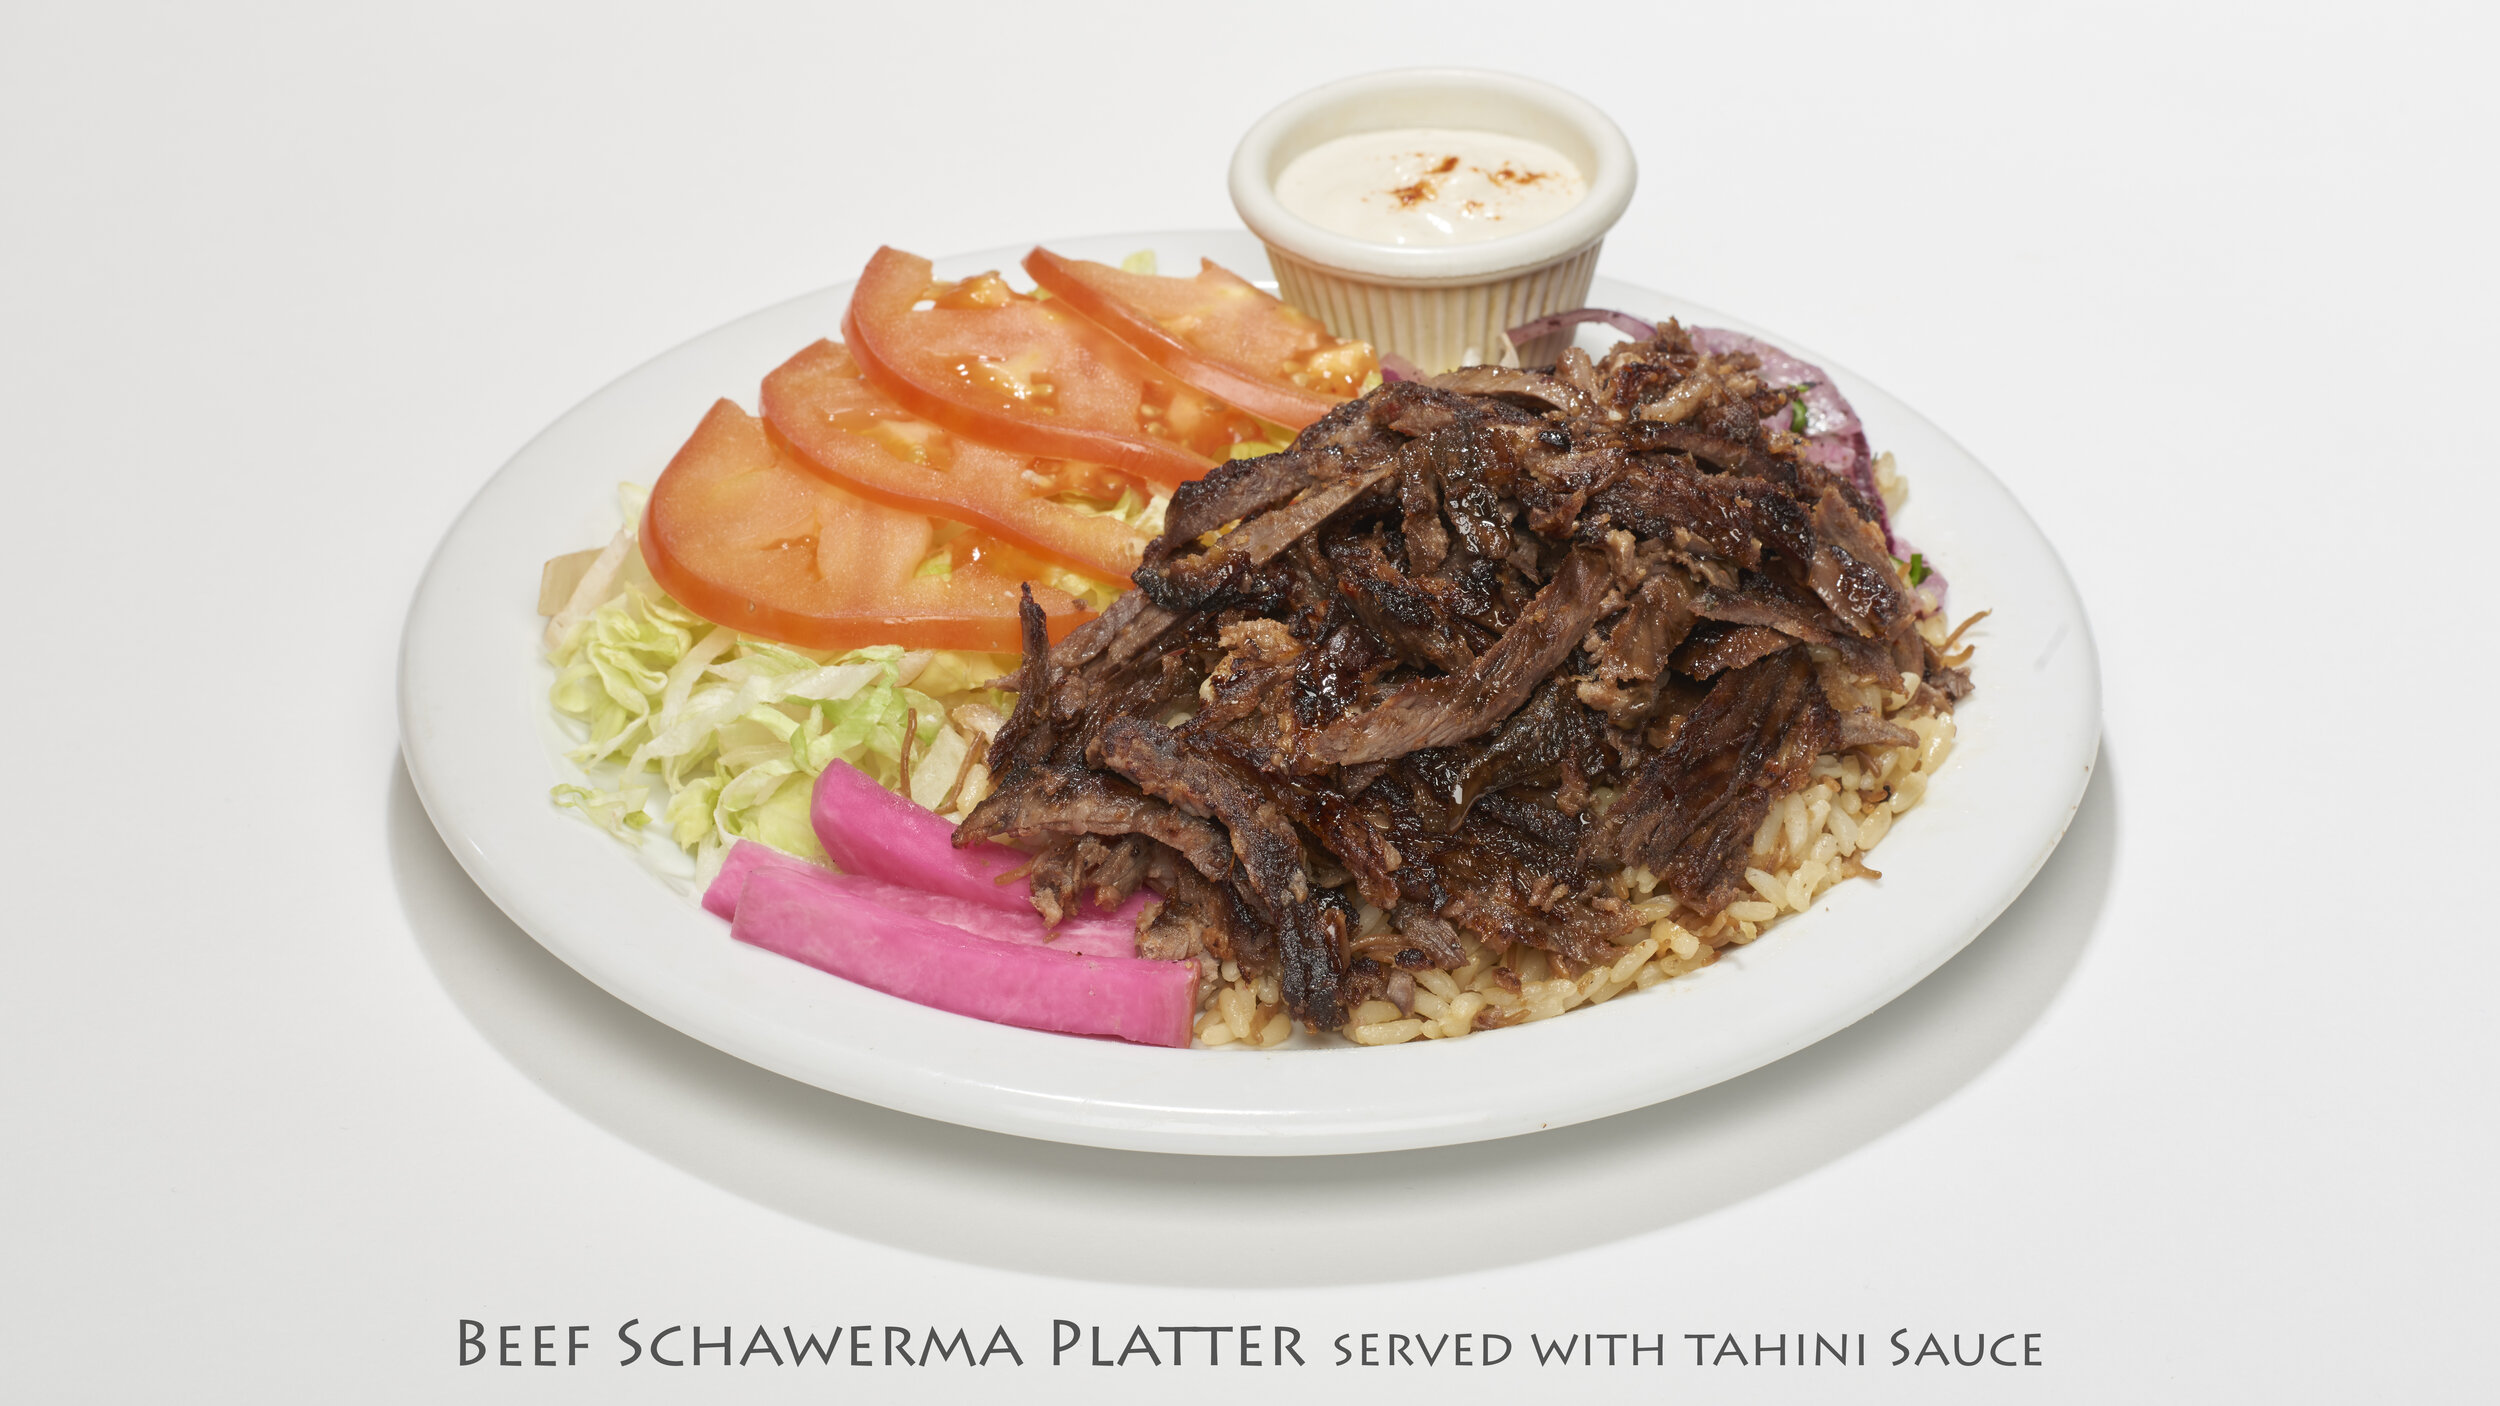 Beef Schawarma Platter